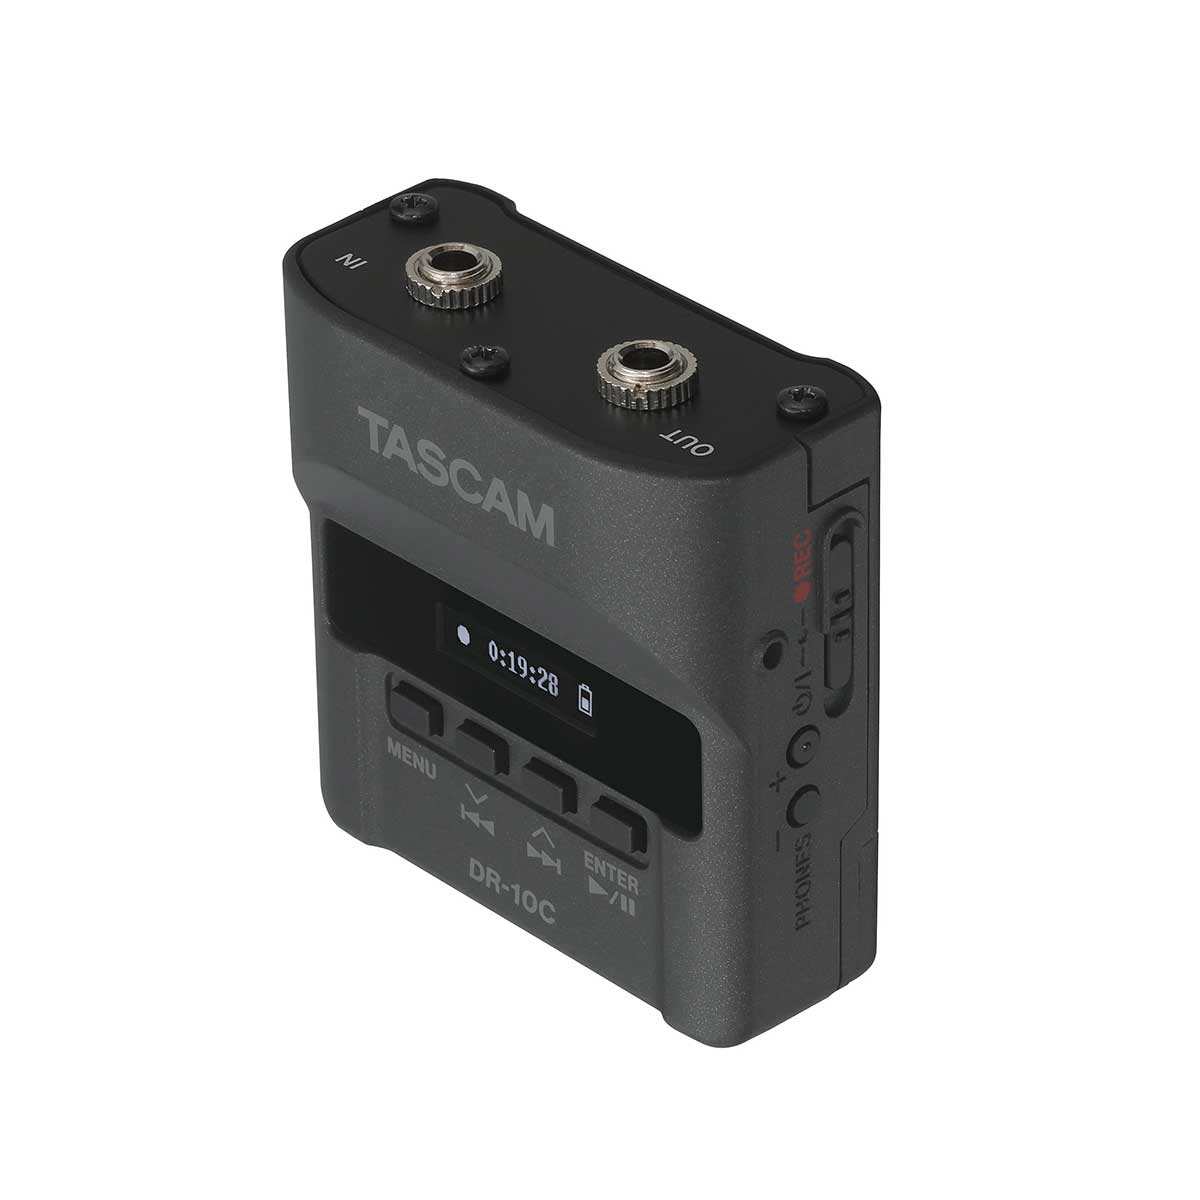 Tascam PCM recorder for Sennheiser Wireless System